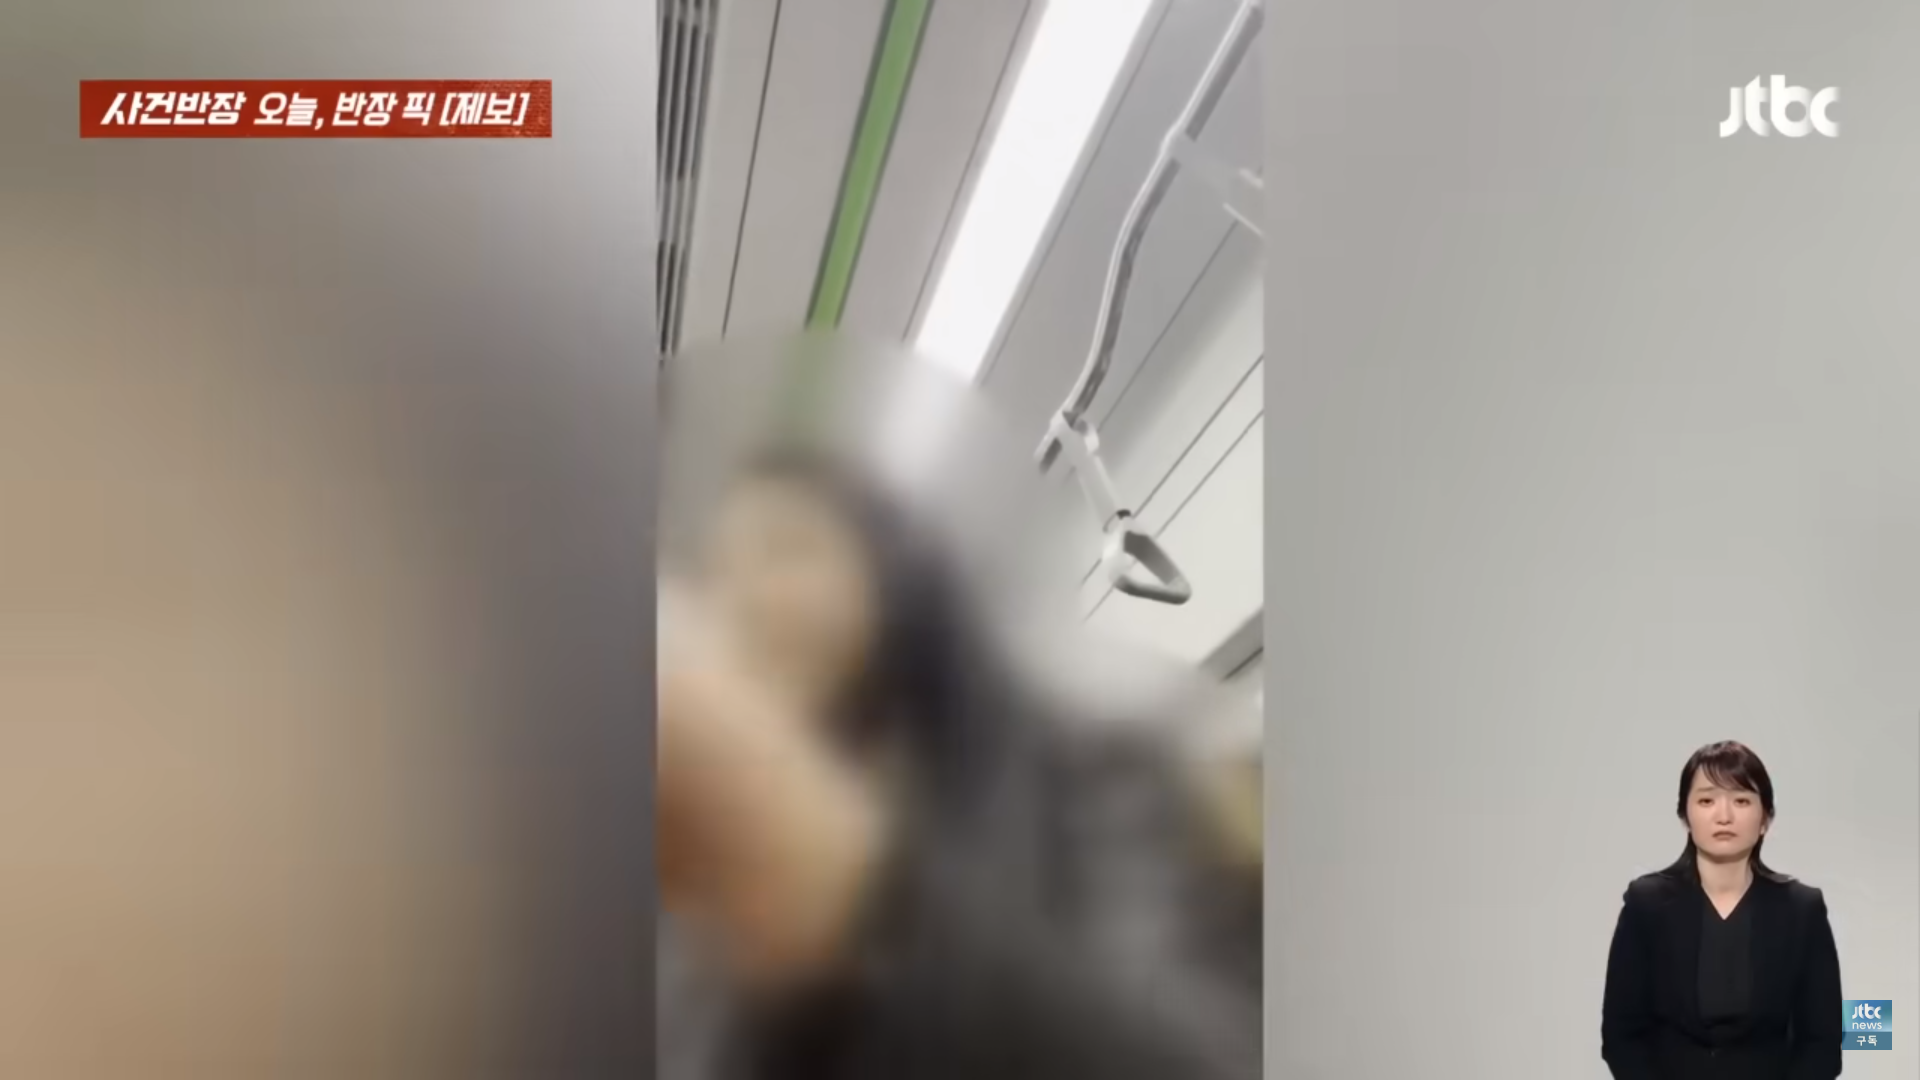 퇴근 시간대 지하철을 이용했다가 한 승객에게 폭언을 들은 여성의 사연이 전해졌다. 사진은 피해 여성에게 폭언을 하는 승객의 모습. JTBC ‘사건반장’ 캡처